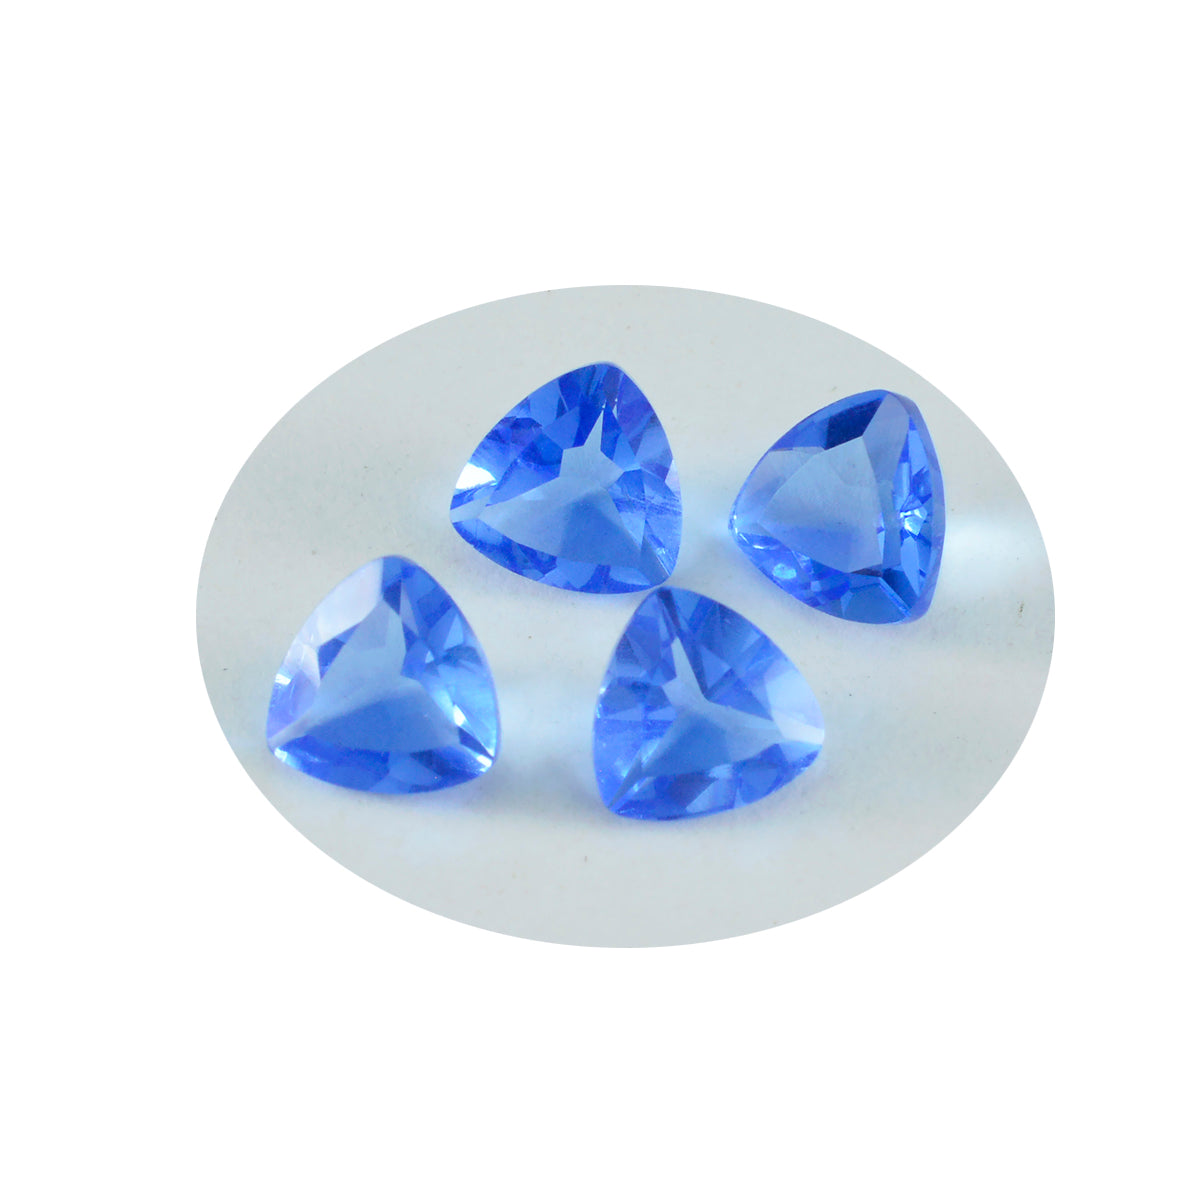 Riyogems 1 pieza de topacio azul CZ facetado 0.118 x 0.197 in forma octágono calidad AA piedra preciosa suelta